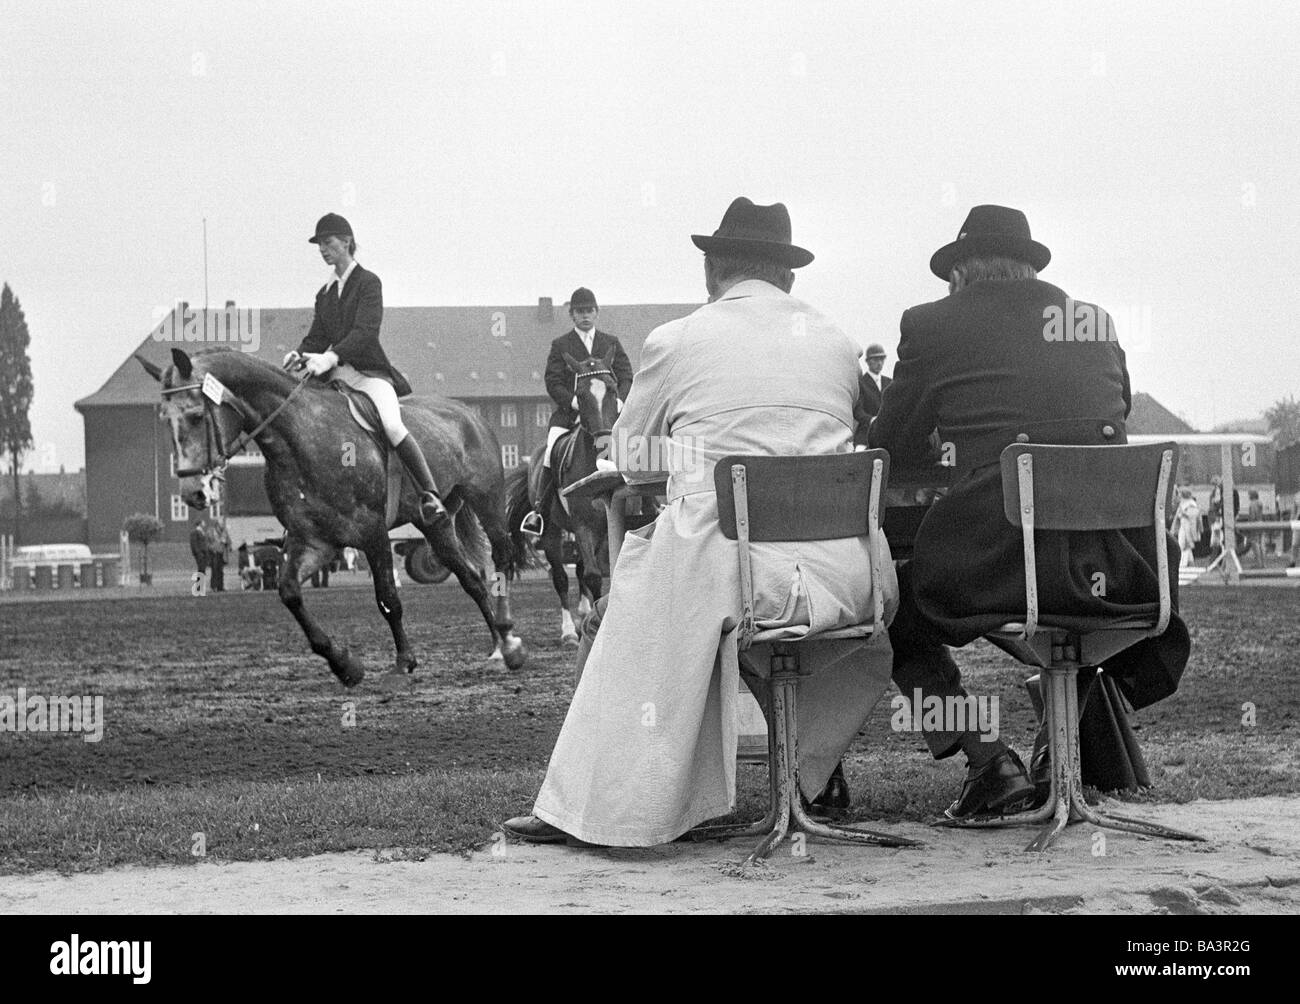 Negli anni settanta, foto in bianco e nero, sport, ippica, horse show 1974 di Bottrop, dressage equitazione, cavallo e cavaliere sono esaminati dai giudici, D-Bottrop, la zona della Ruhr, Renania settentrionale-Vestfalia Foto Stock